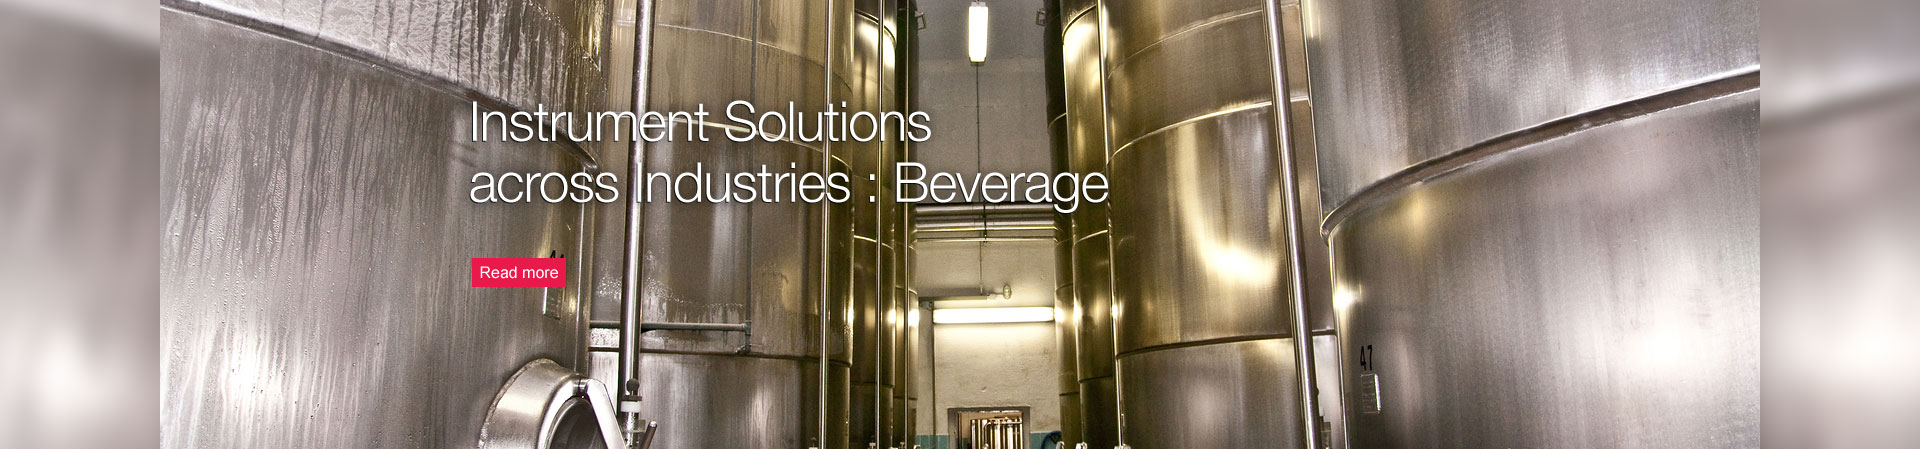 Instrument Solutions across Industries : Beverage